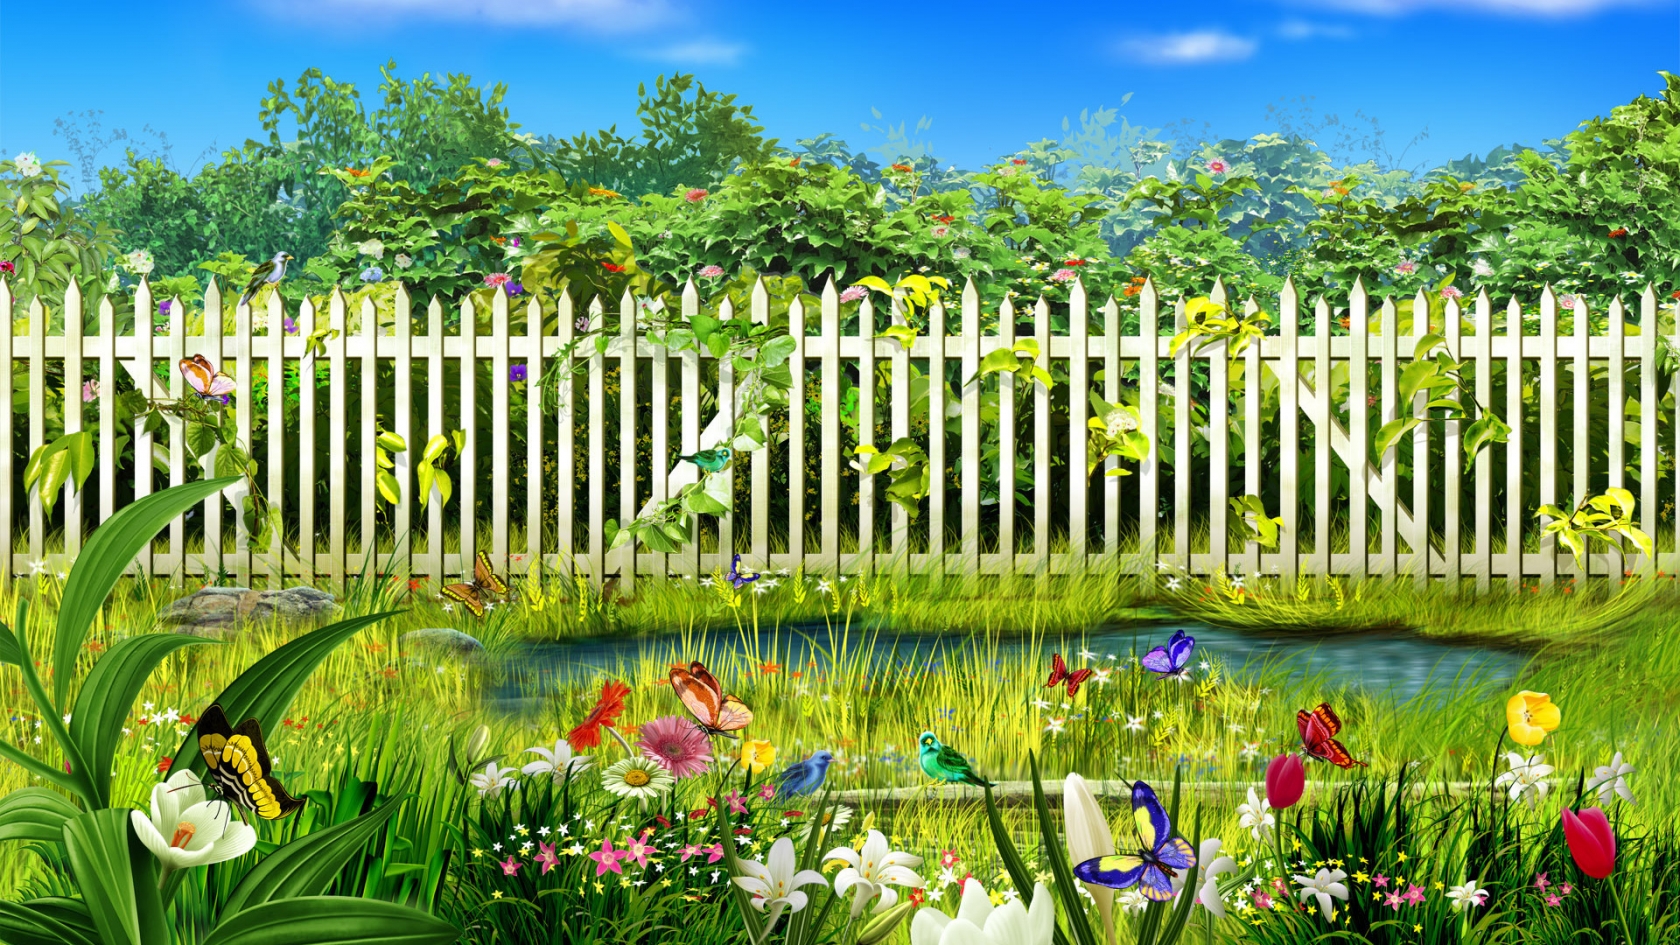 Spring garden for 1680 x 945 HDTV resolution